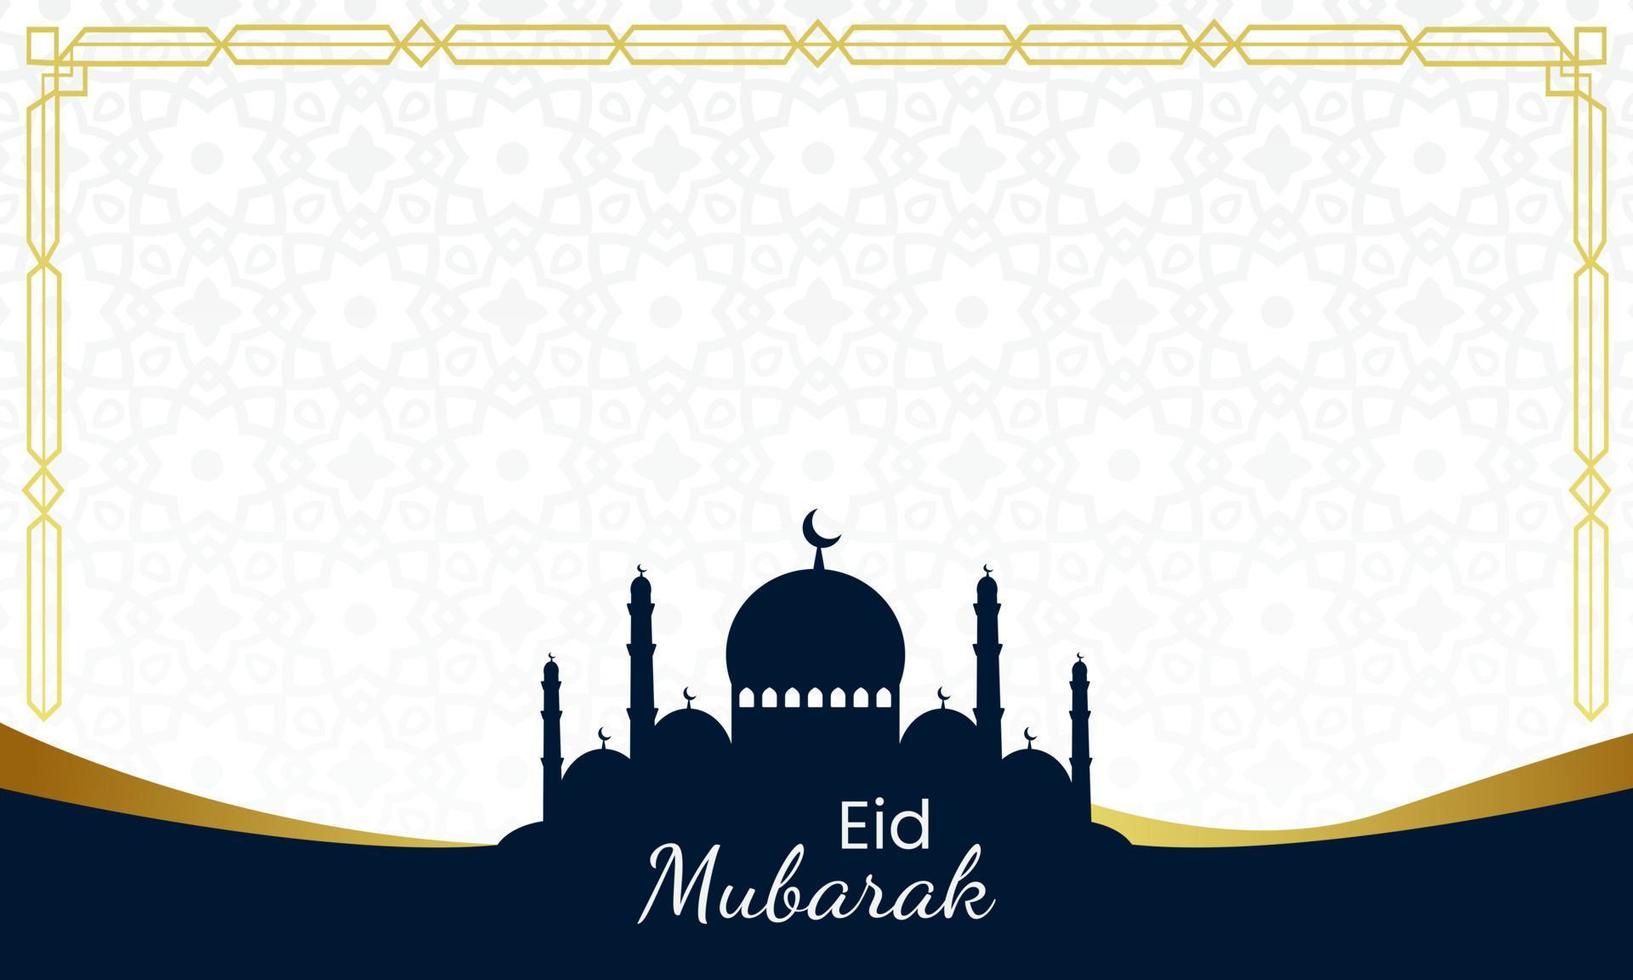 Simple and elegant eid fitri mubarak design for greetings vector